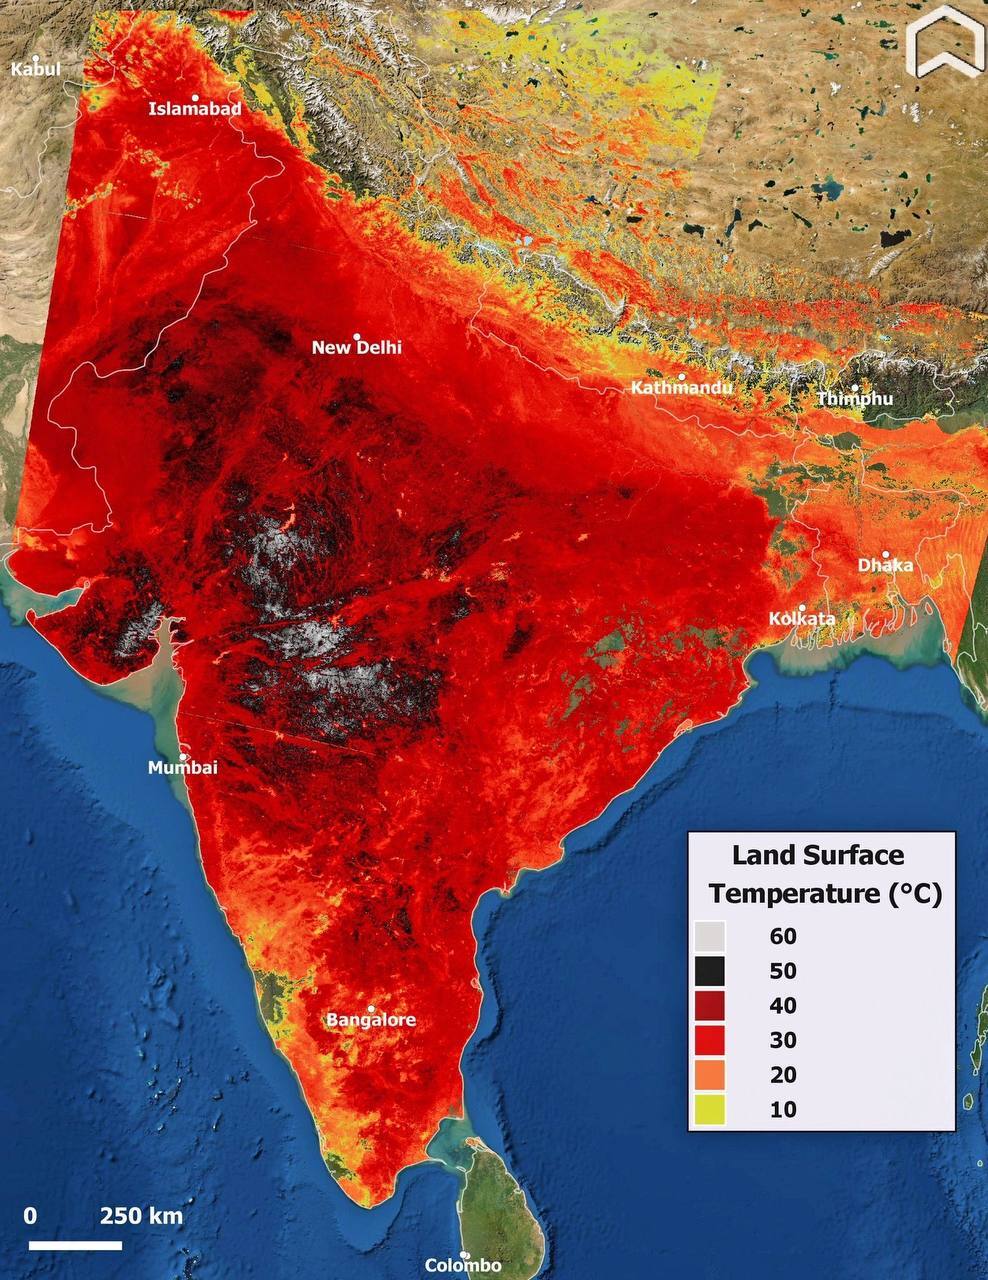 Температура воздуха в Индии превысила 50 градусов, земли – более 60°C -Варнет